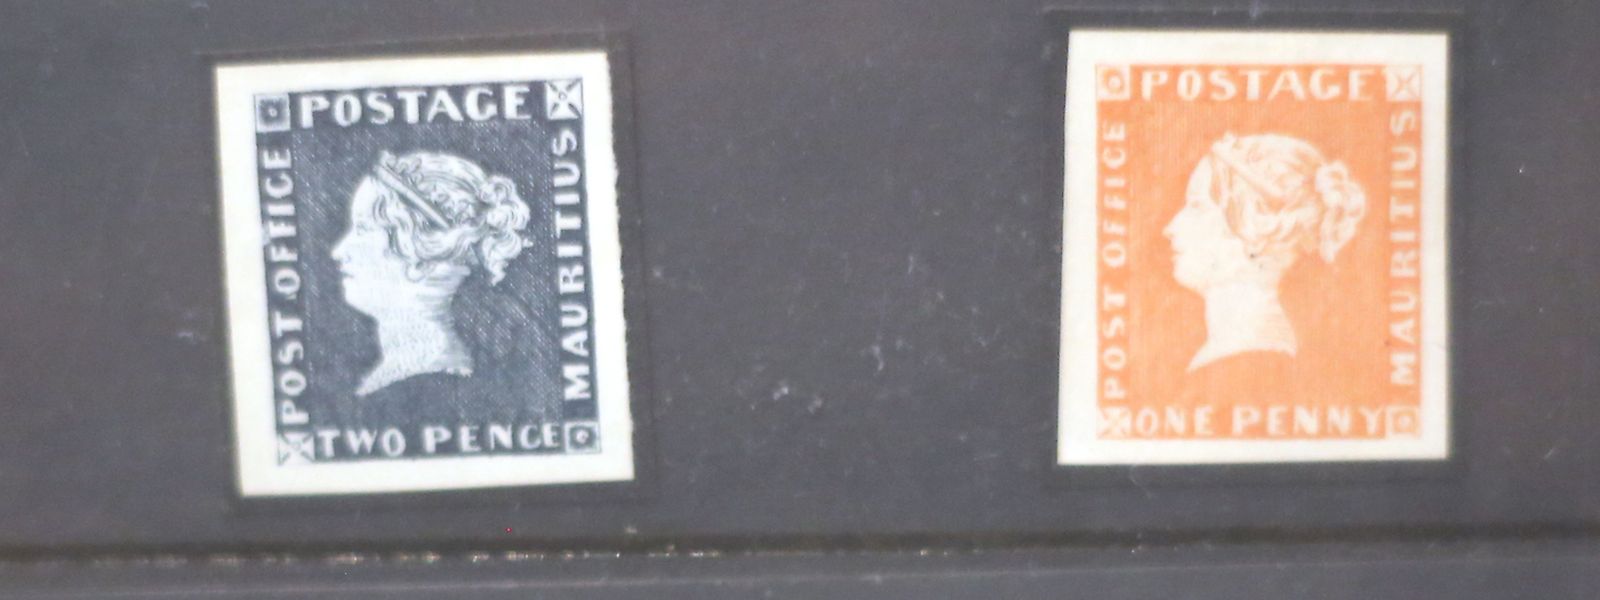 Repliken der ersten Serie der Roten- und Blauen-Mauritius-Briefmarken, die 1847 erstmalig im Postamt des Inselstaats herausgegeben und abgestempelt wurden.